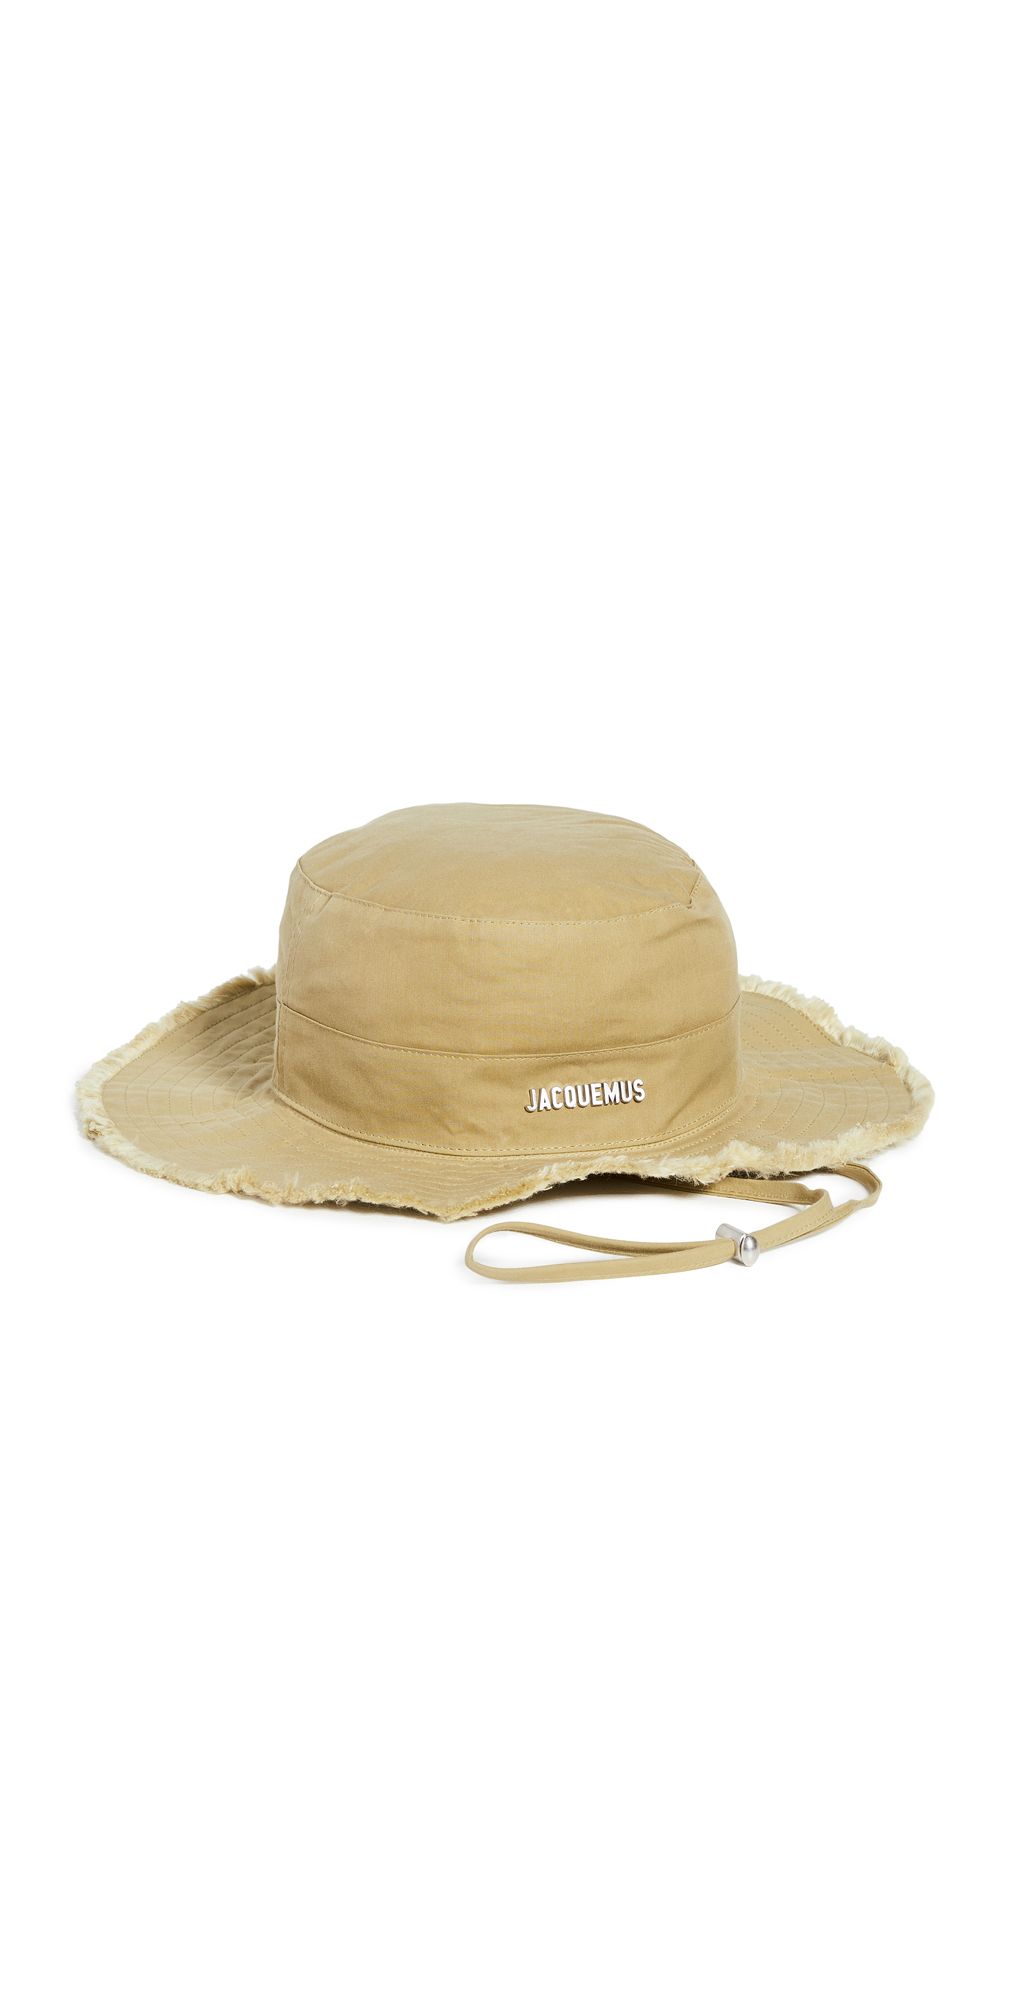 Jacquemus Le Bob Artichaut Hat | Shopbop